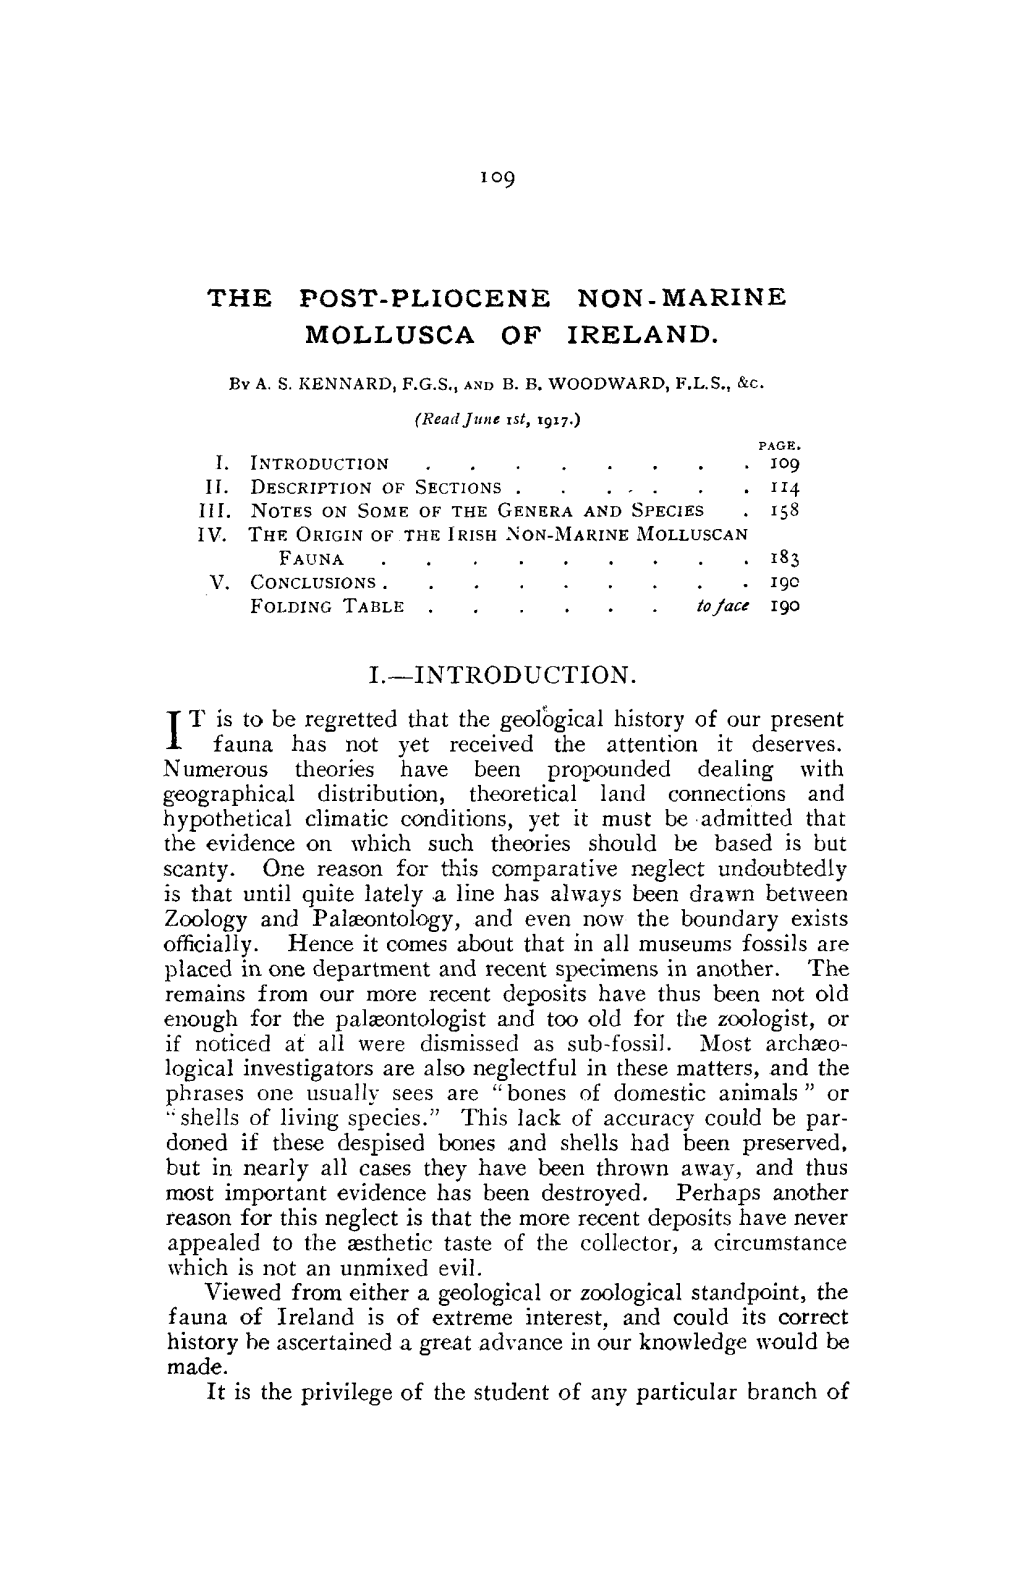 The Post-Pliocene Non-Marine Mollusca of Ireland